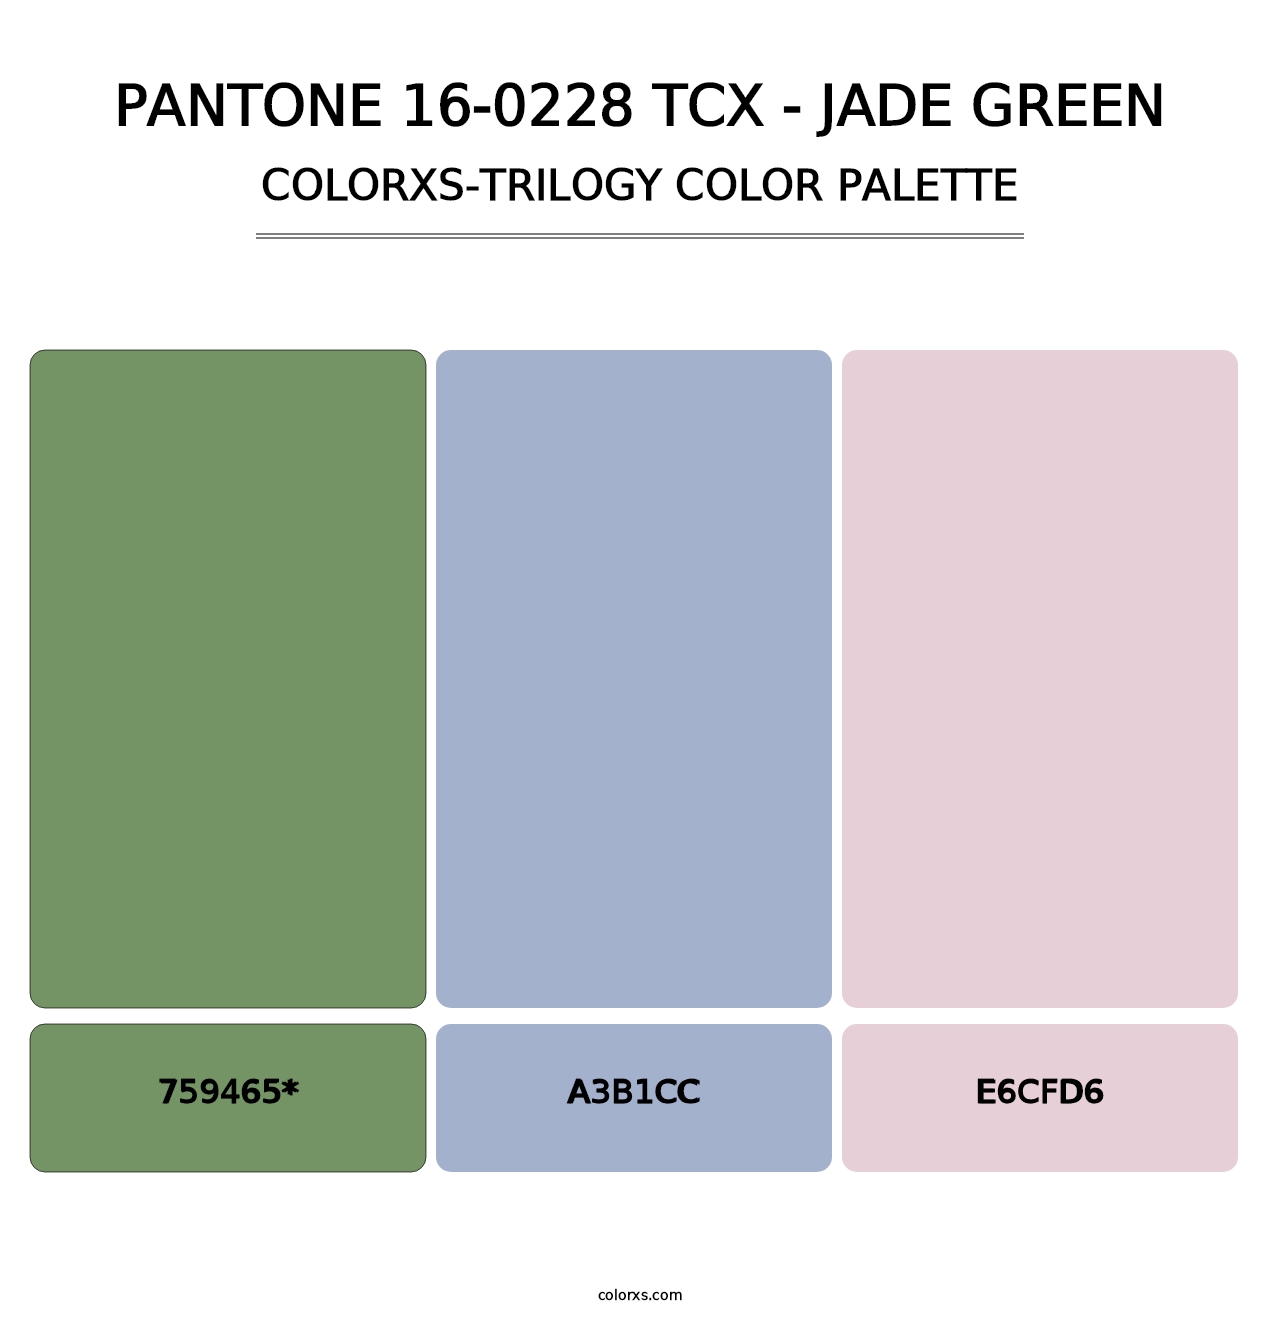 PANTONE 16-0228 TCX - Jade Green - Colorxs Trilogy Palette